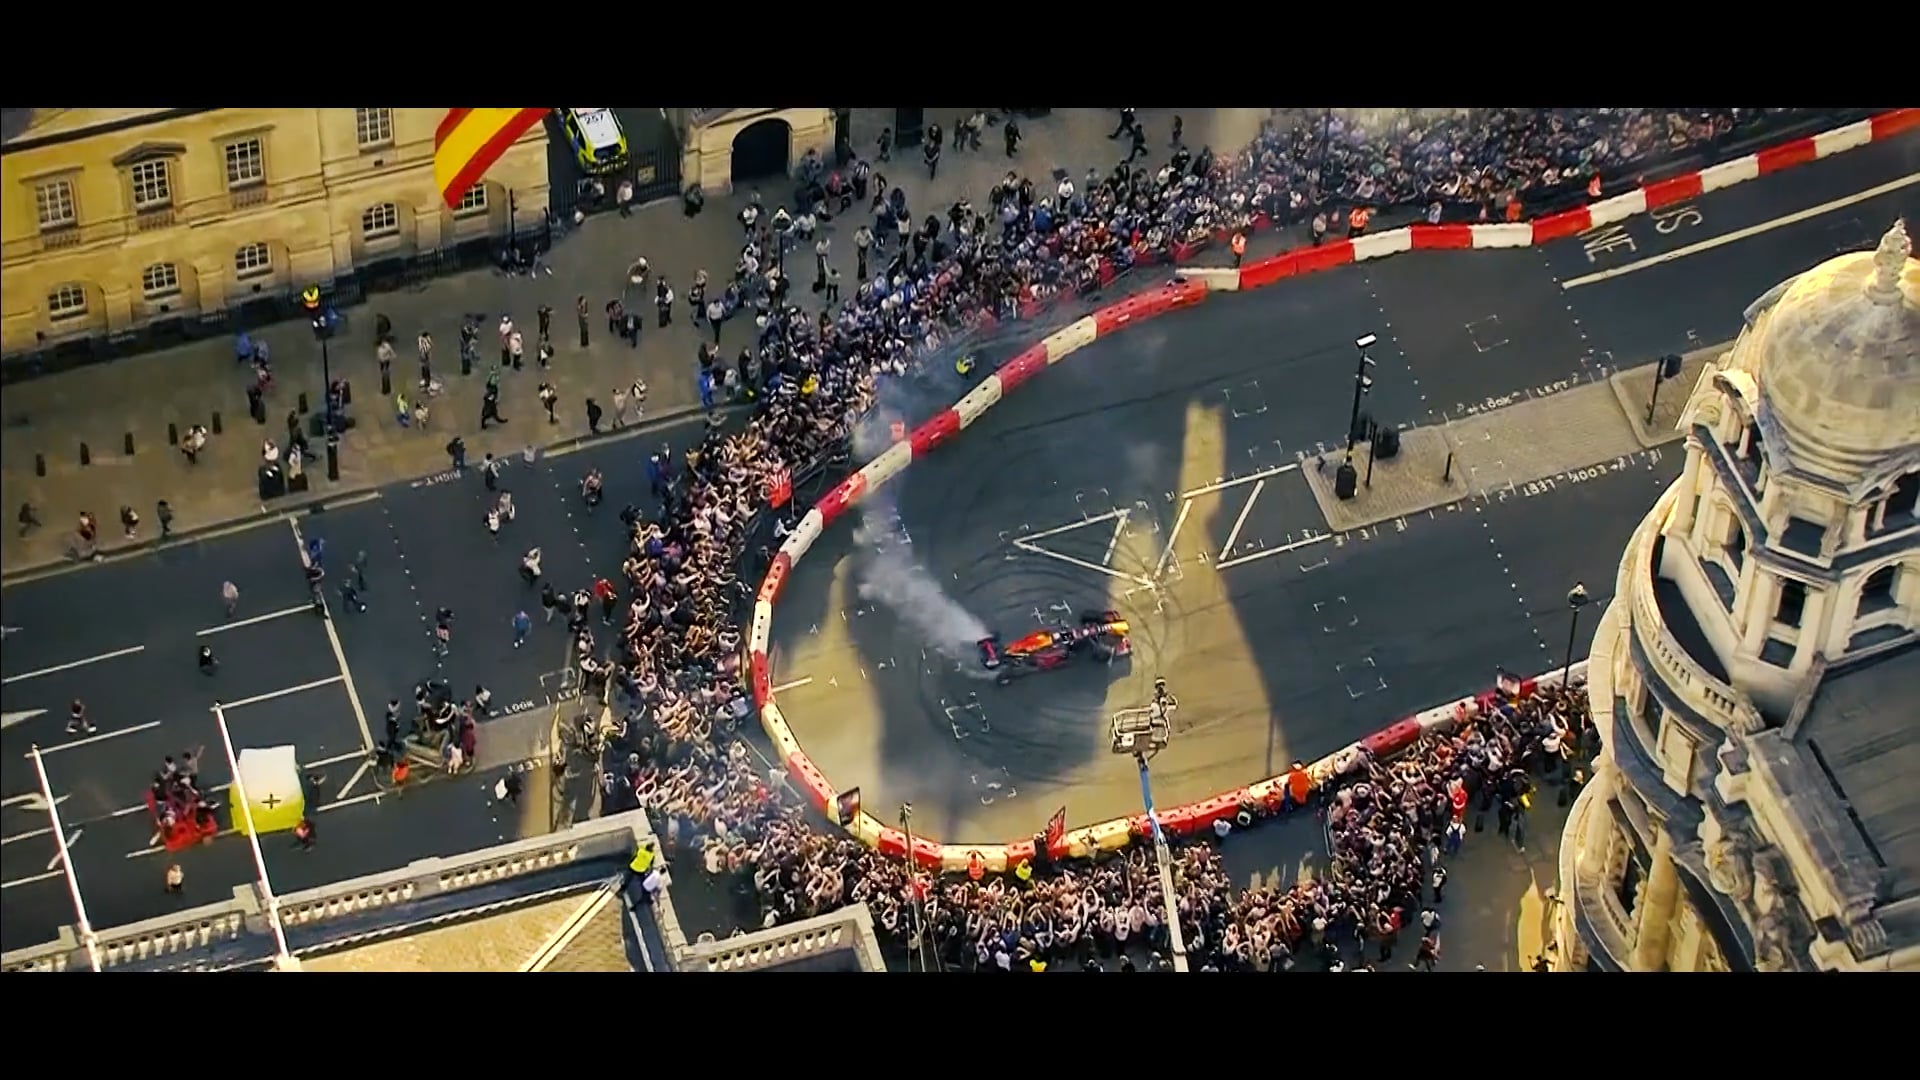 F1 Live on Vimeo